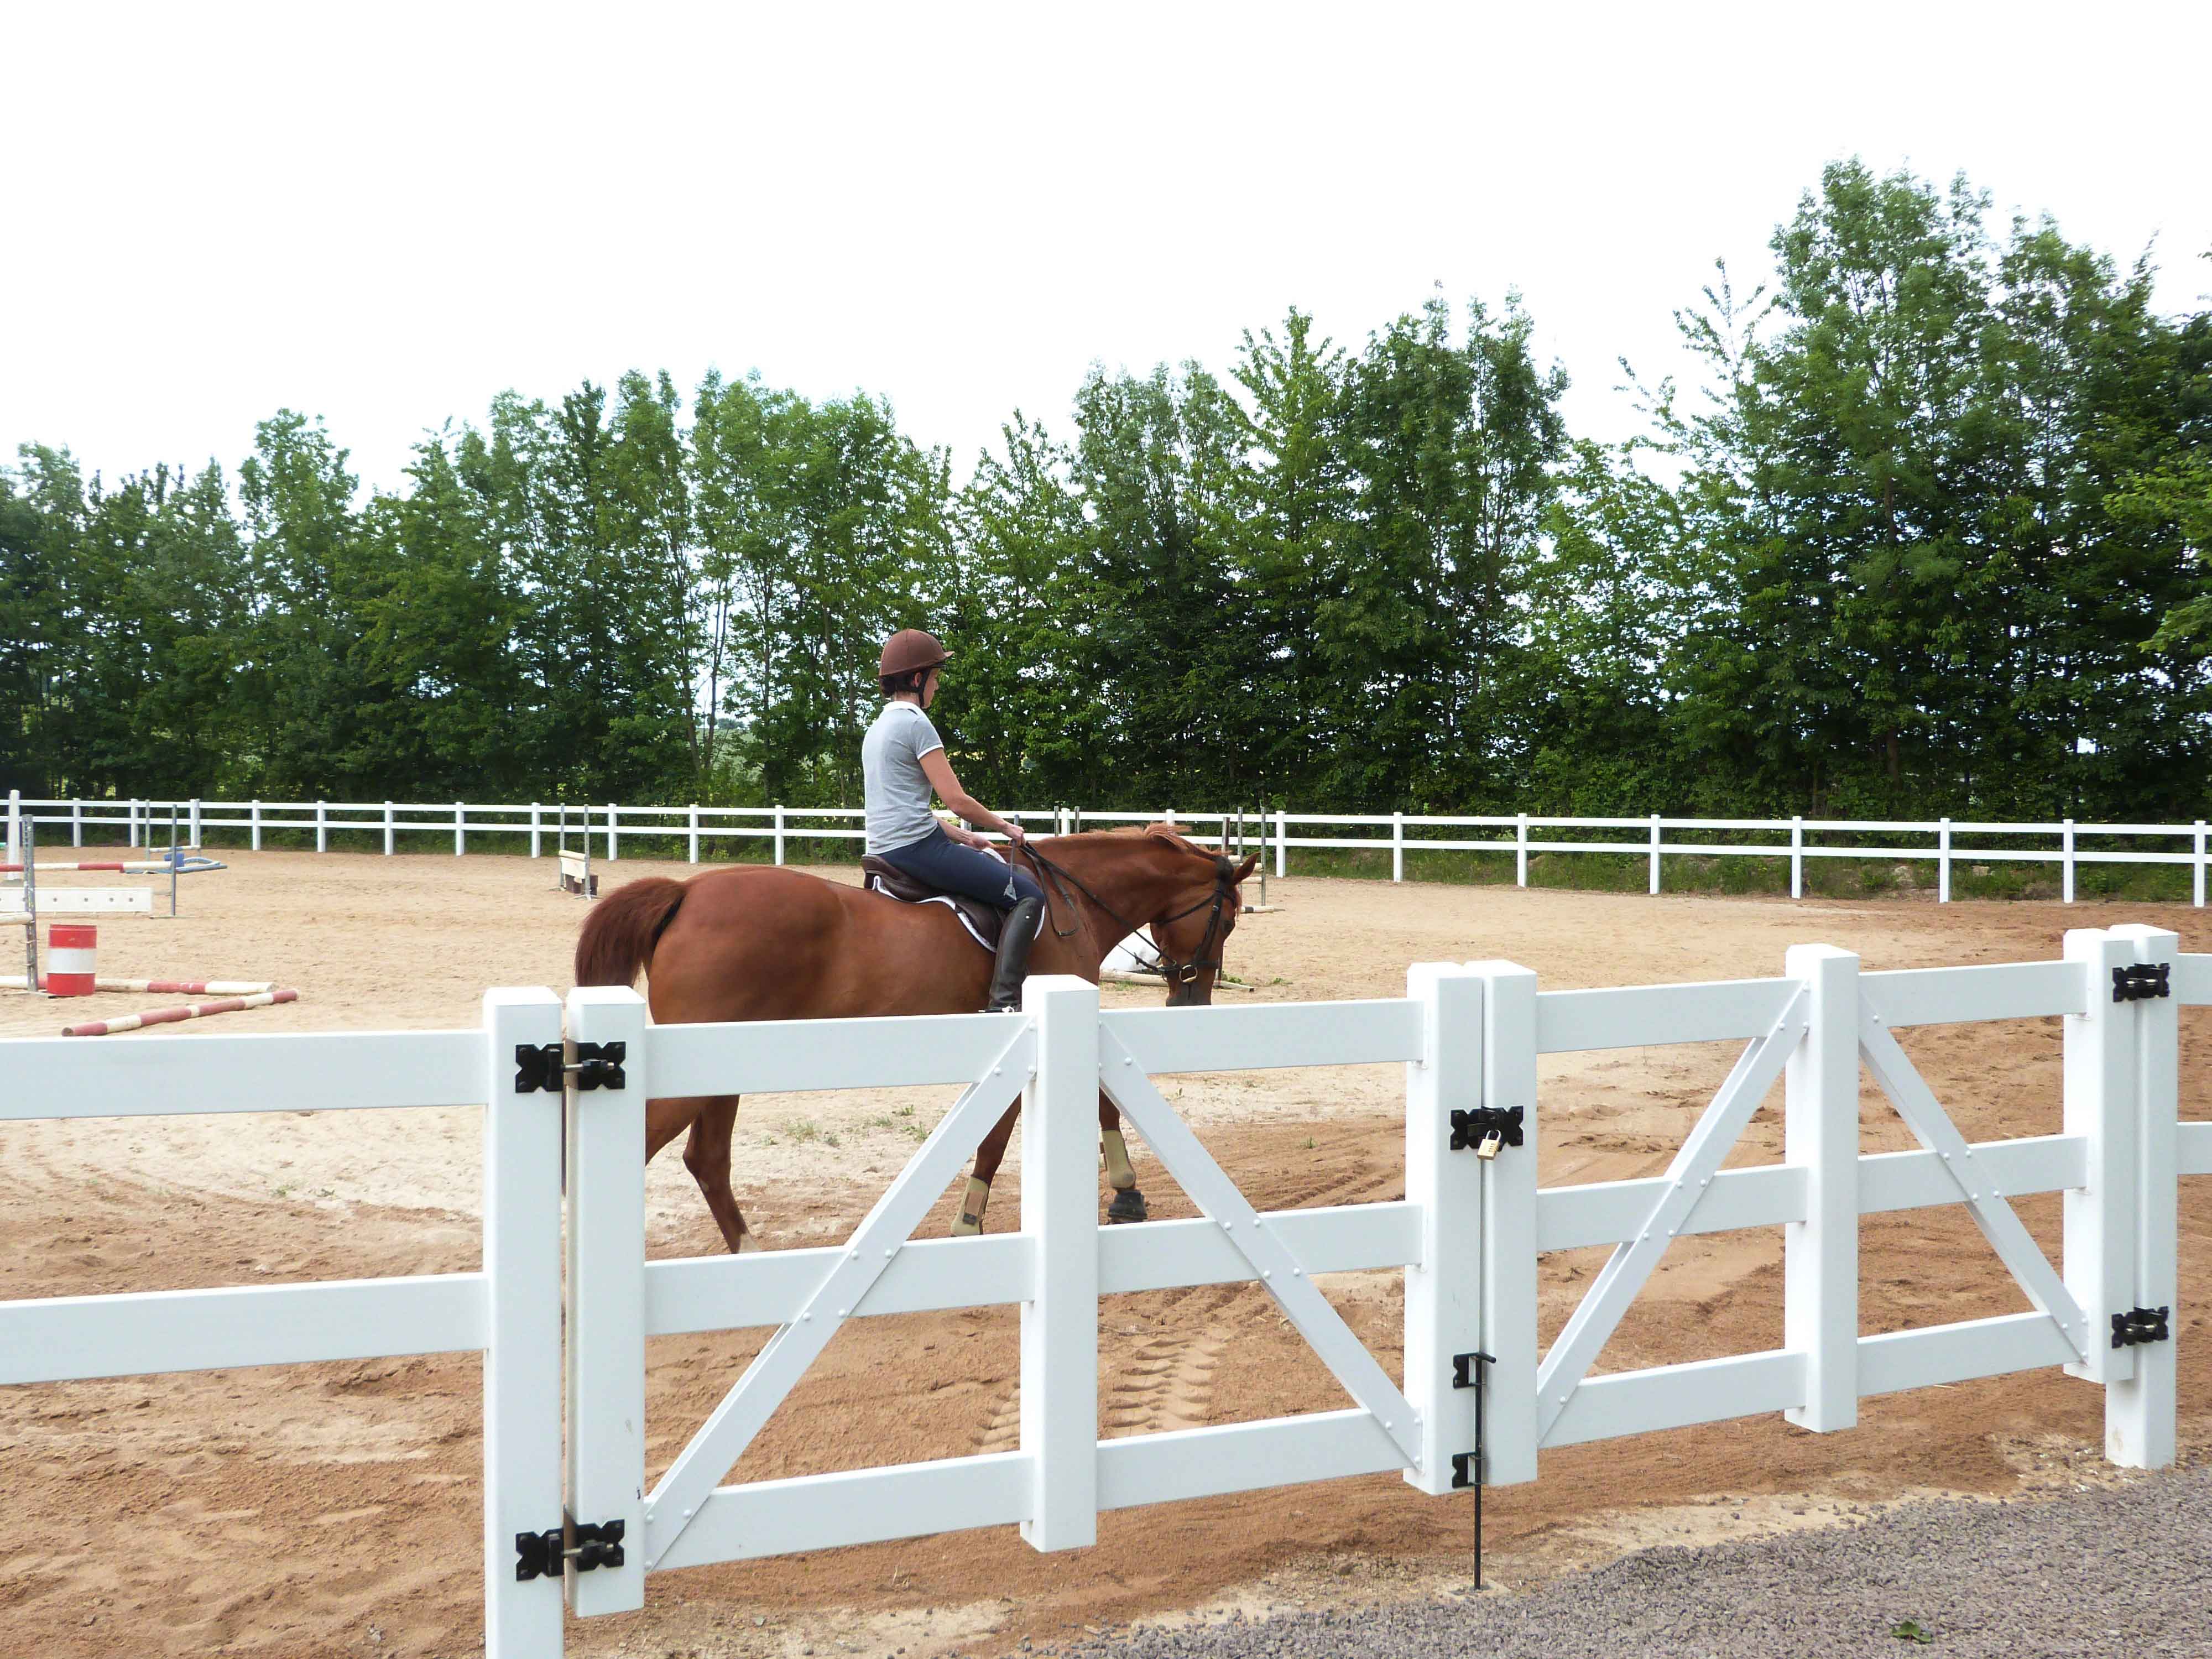 Een vrouwelijke ruiter leidt haar paard rond in een springpiste. De arena wordt begrensd door een wit plastic paardenhek.